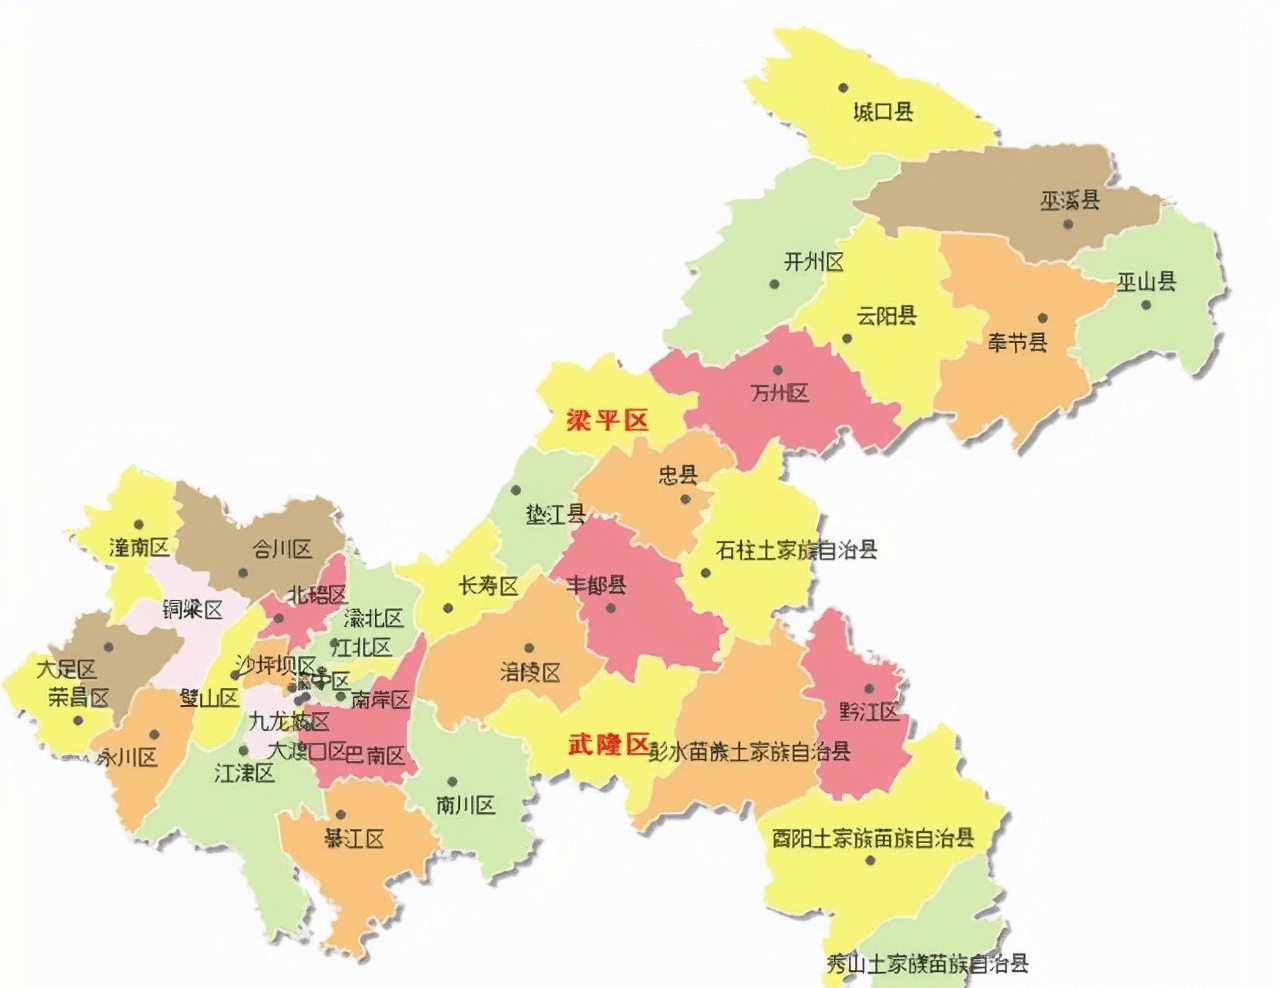 重庆市各区地图 放大图片